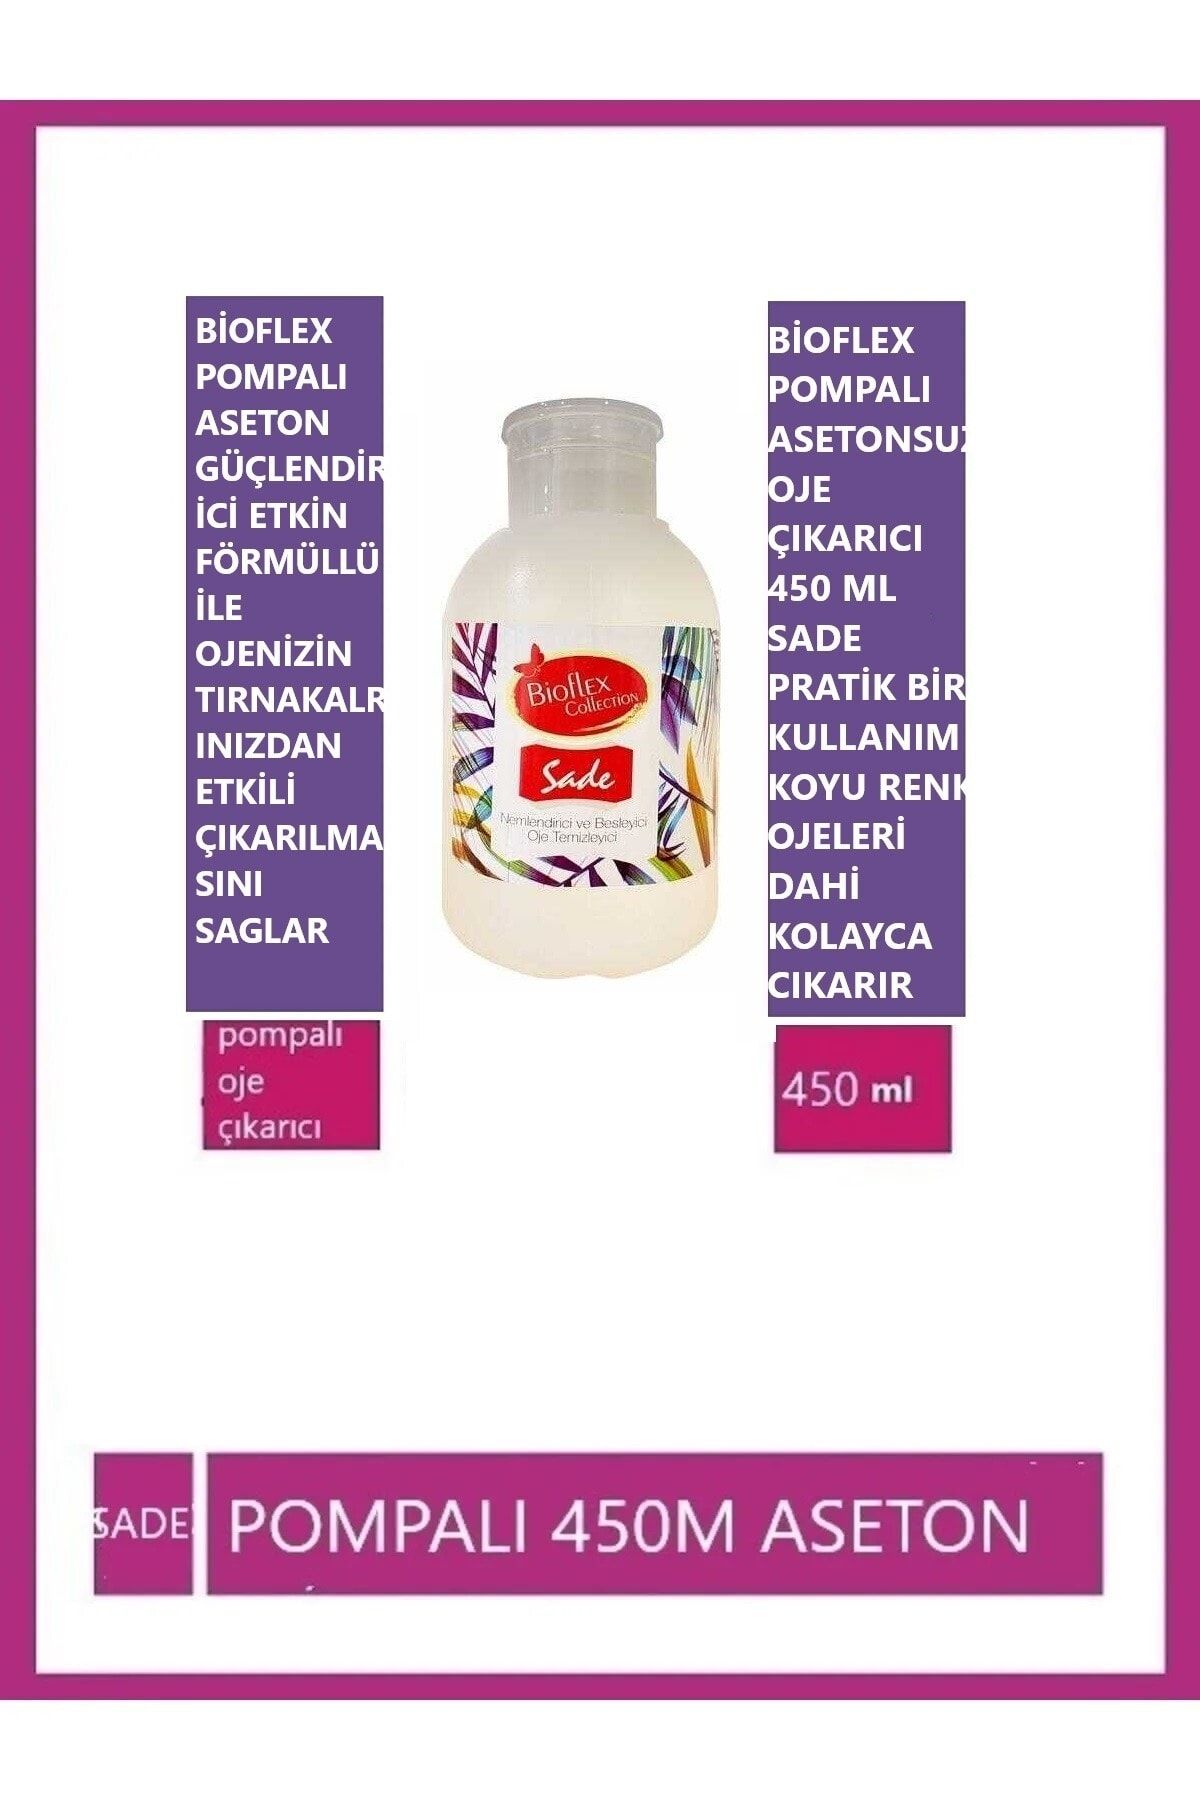 Bioflex Pompali Oje Çikarici 450 ml Sade 8680789380283